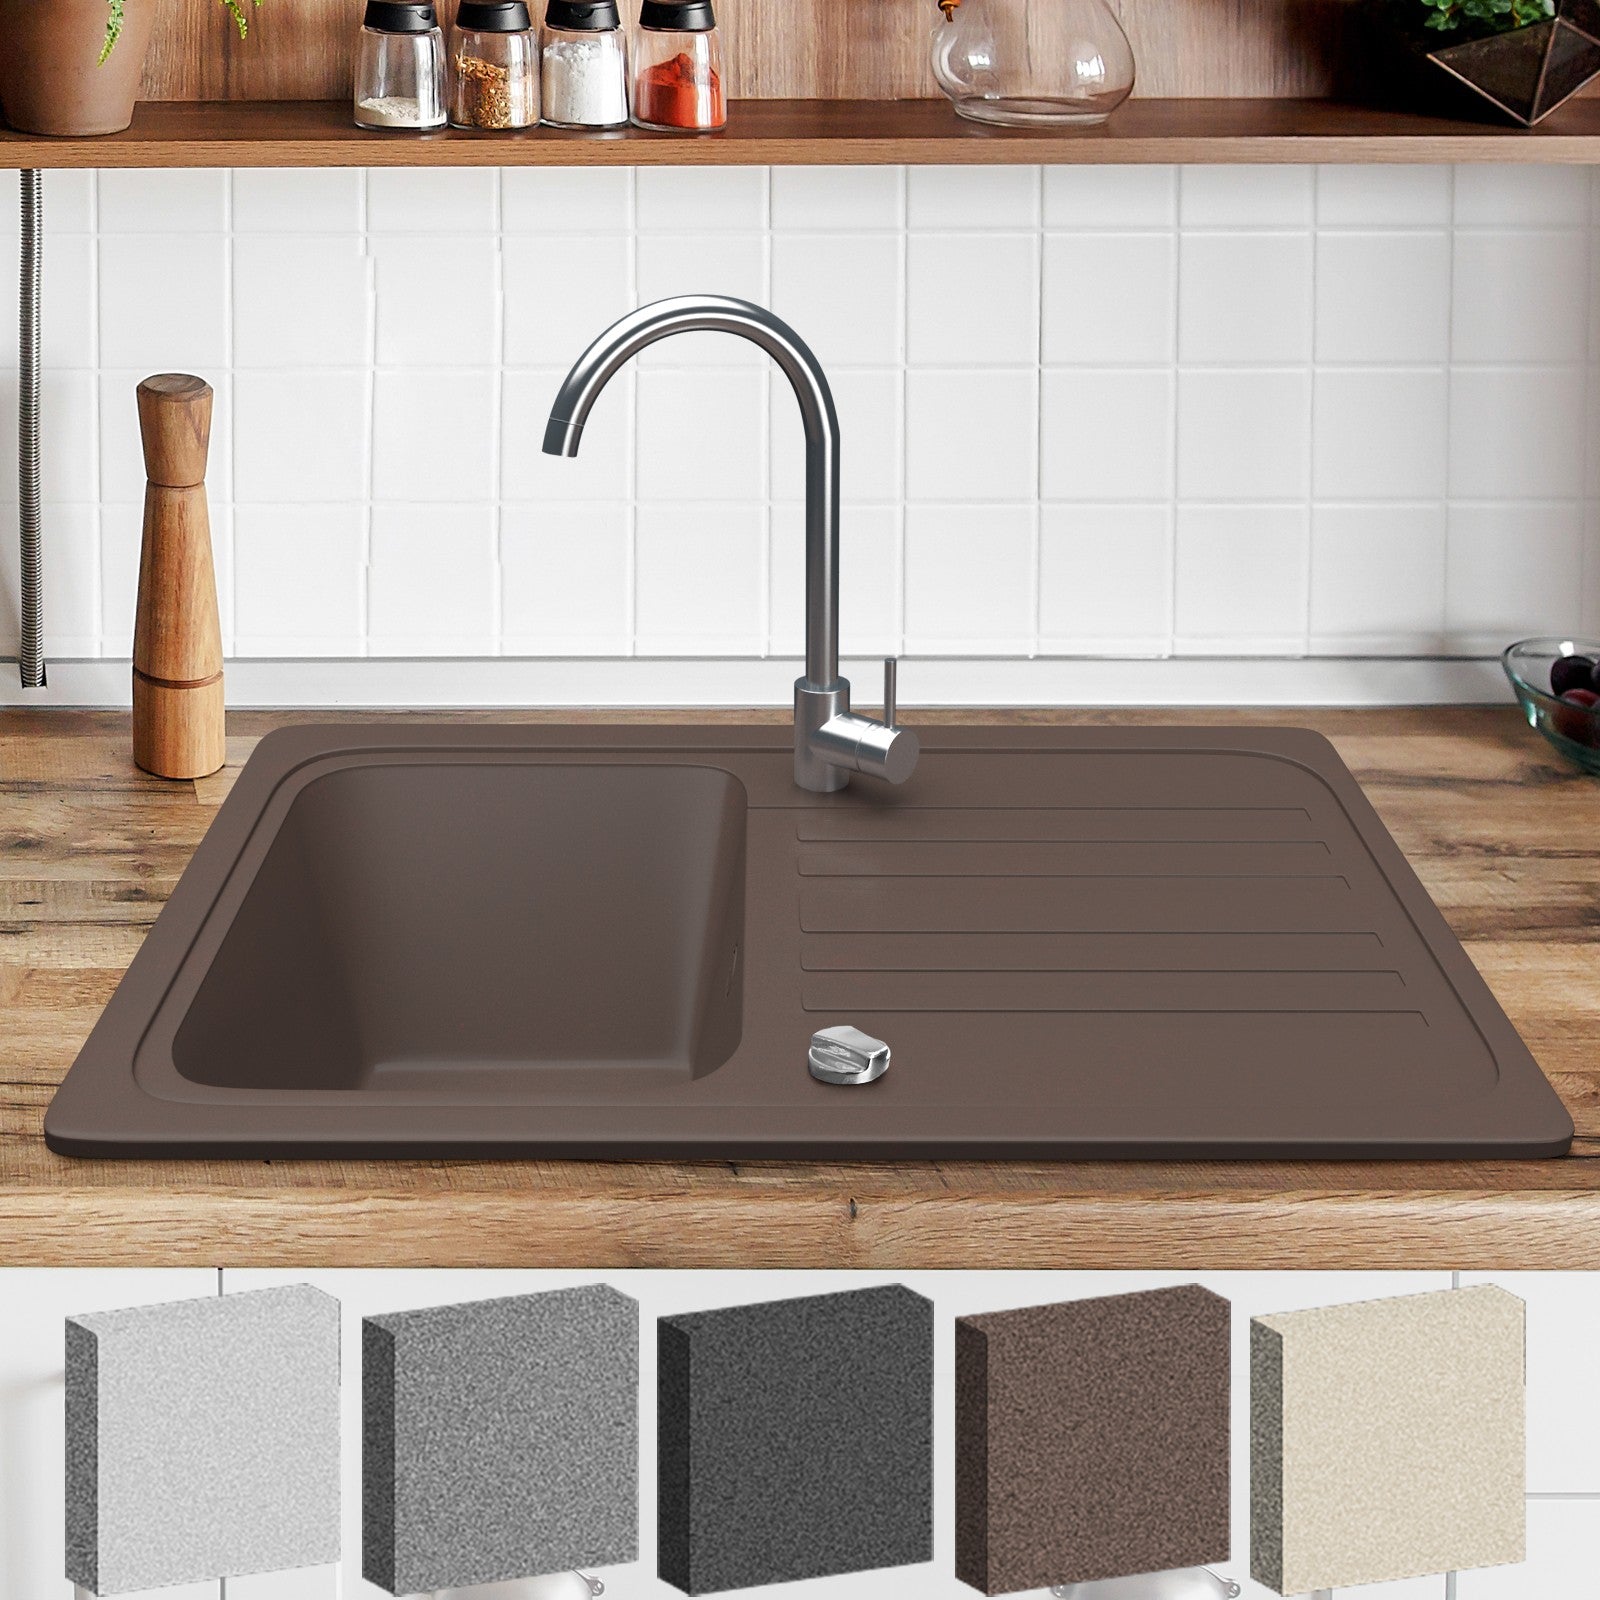 Billede af Aquamarin ® vask - granit, sæt, ca. 30" x 18", med afløb, armatur i rustfrit stål, vendbar aftrækker, rektangulær, brun - indbygget vask, vask, kompositvask, køkkenvask